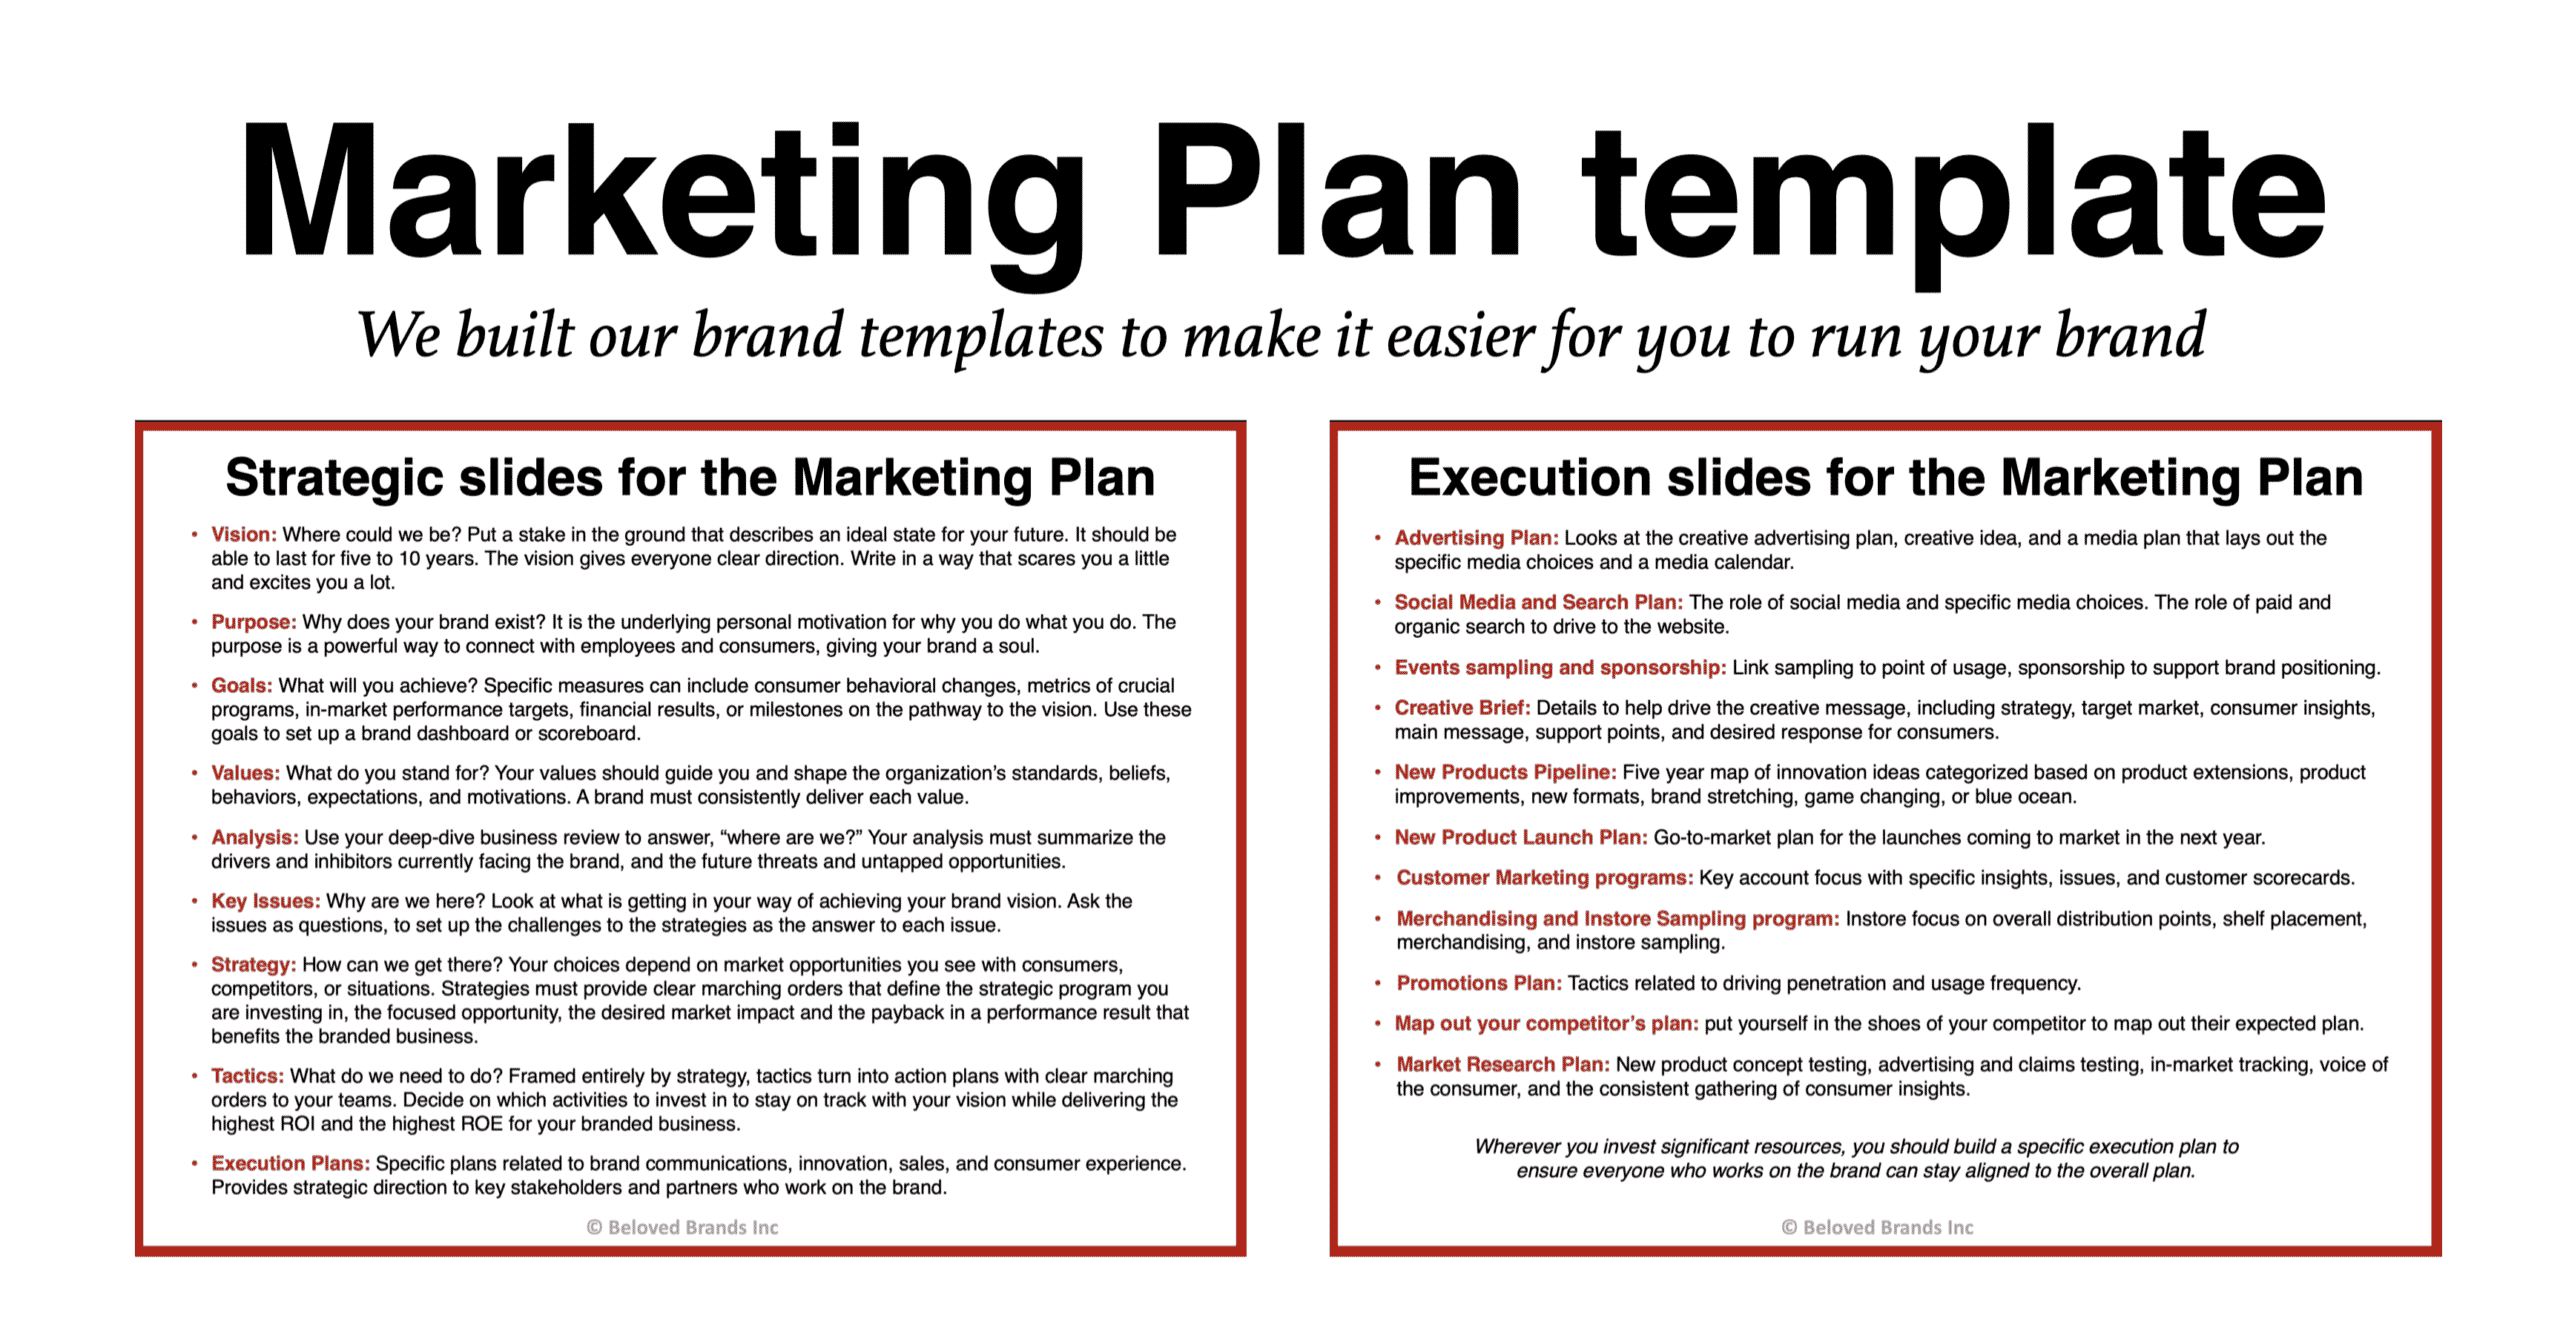 Marketing Plan template slide details